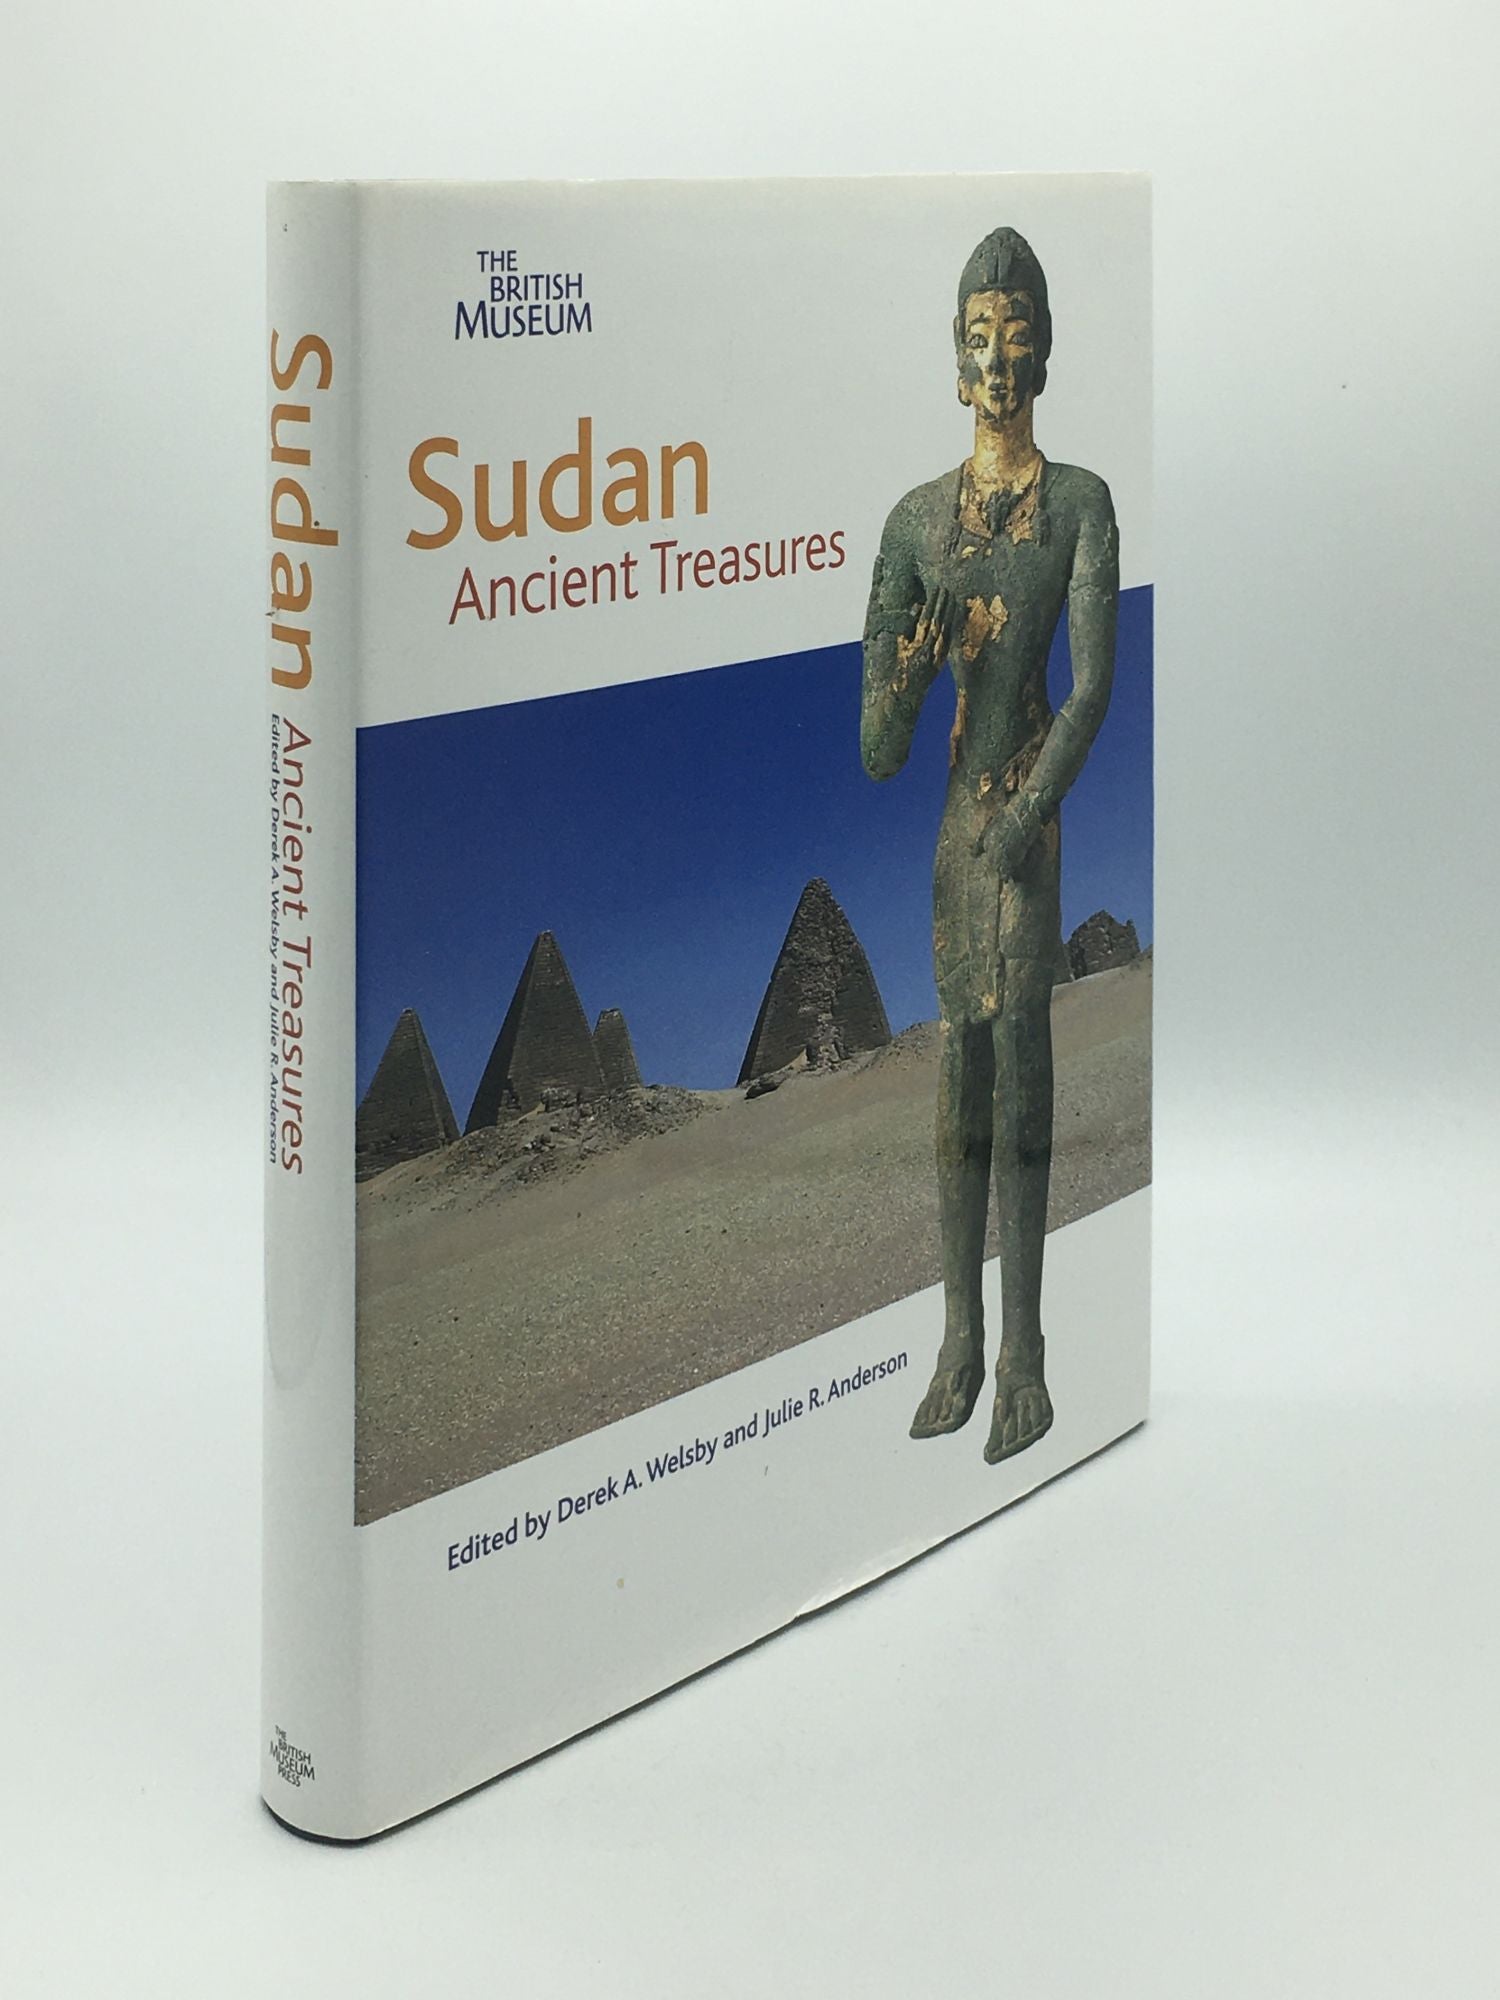 WELSBY Derek A, ANDERSON Juie R. - Sudan Ancient Treasures